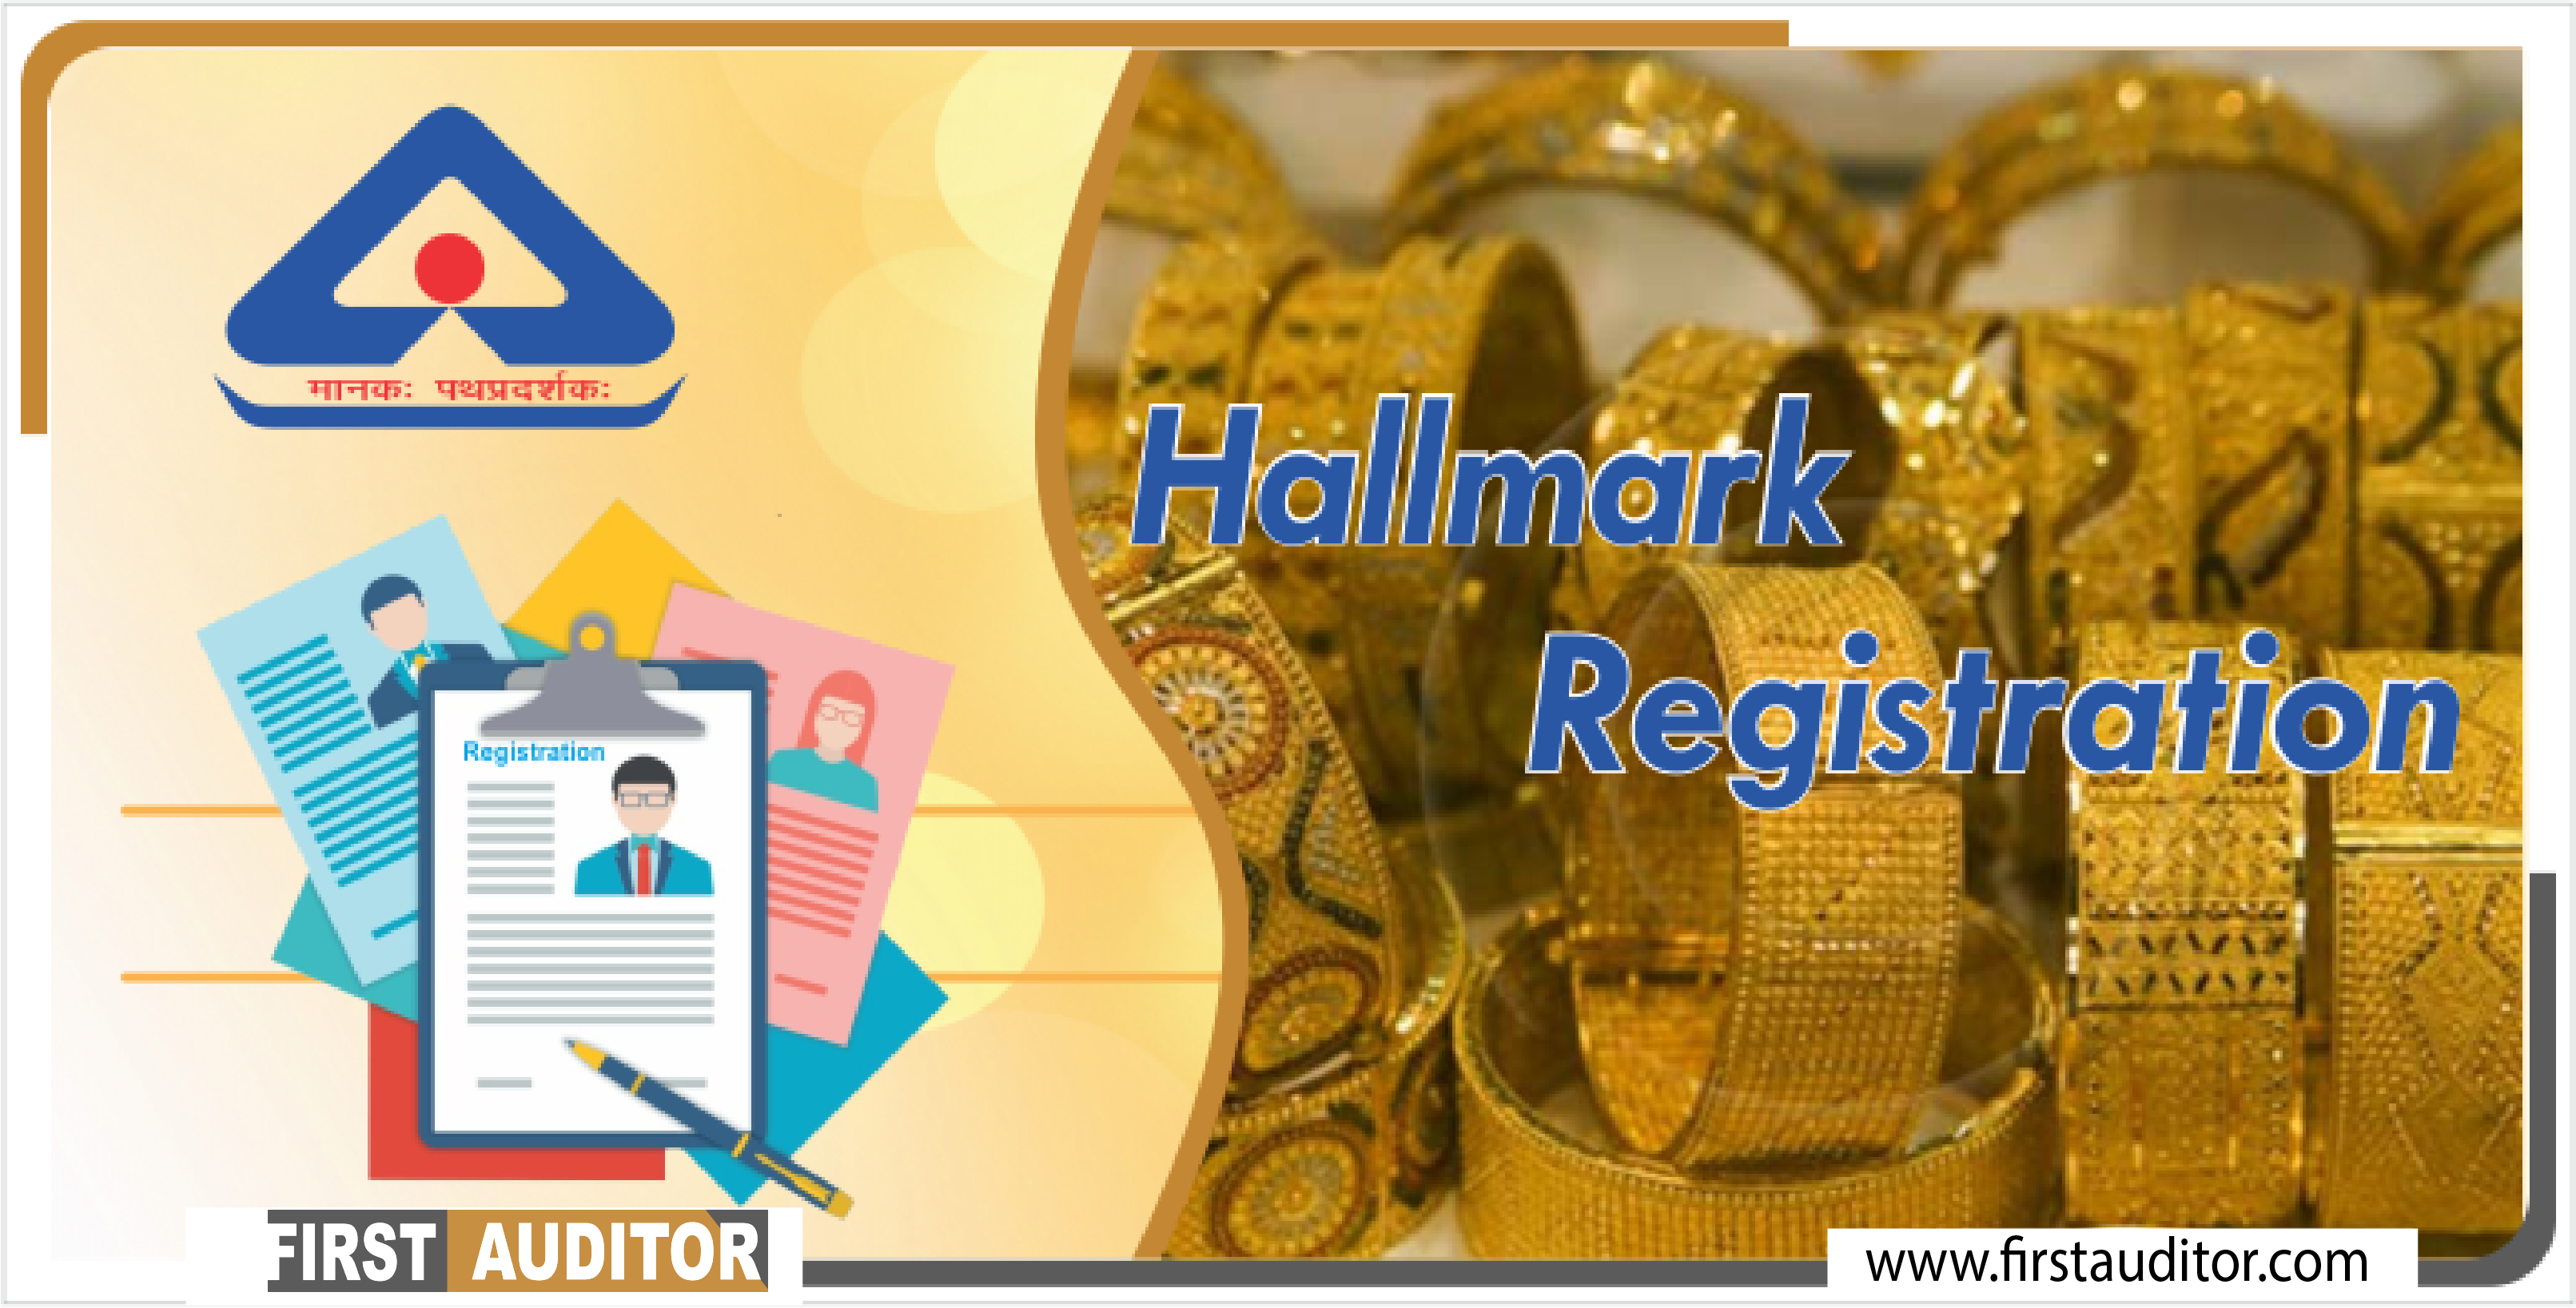 hallmark-registration-services-in-chennai